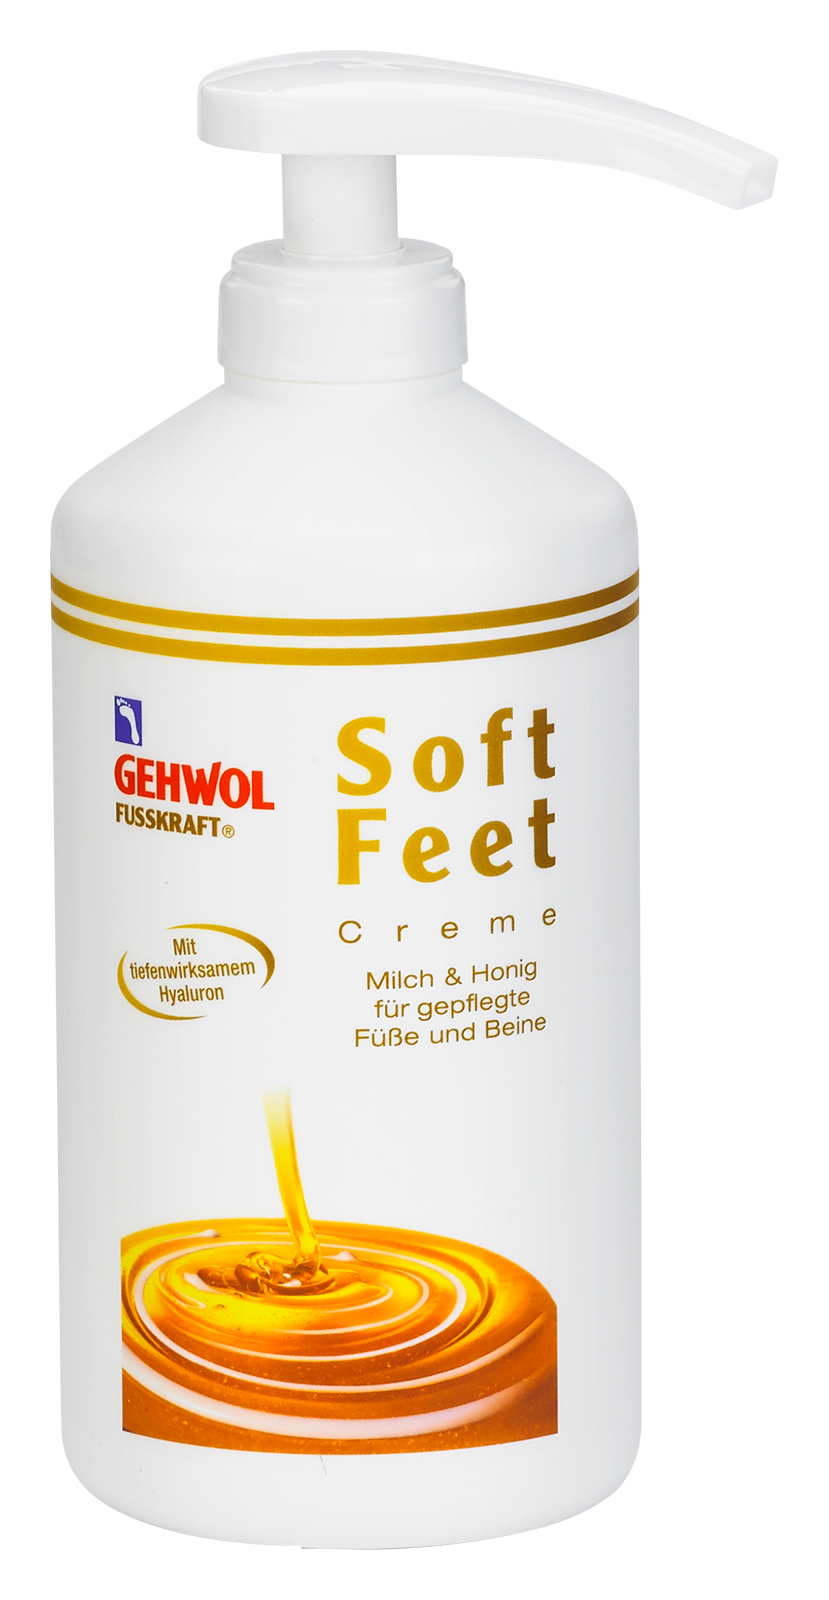 GEHWOL FUSSKRAFT Soft Feet Creme mit Milch & Honig 500 ml